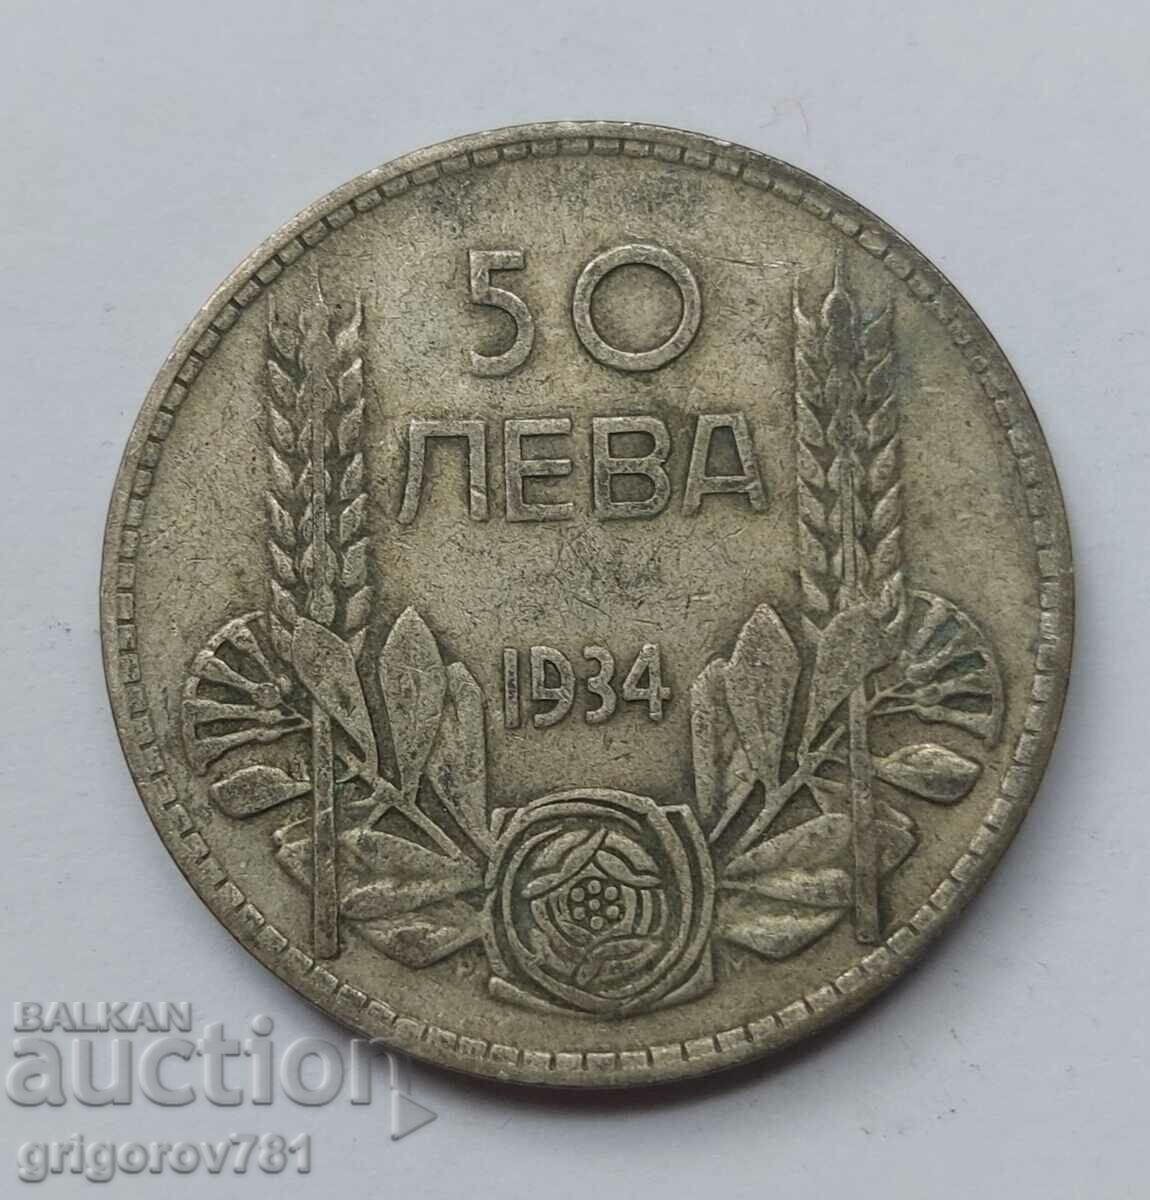 Ασήμι 50 λέβα Βουλγαρία 1934 - ασημένιο νόμισμα #6